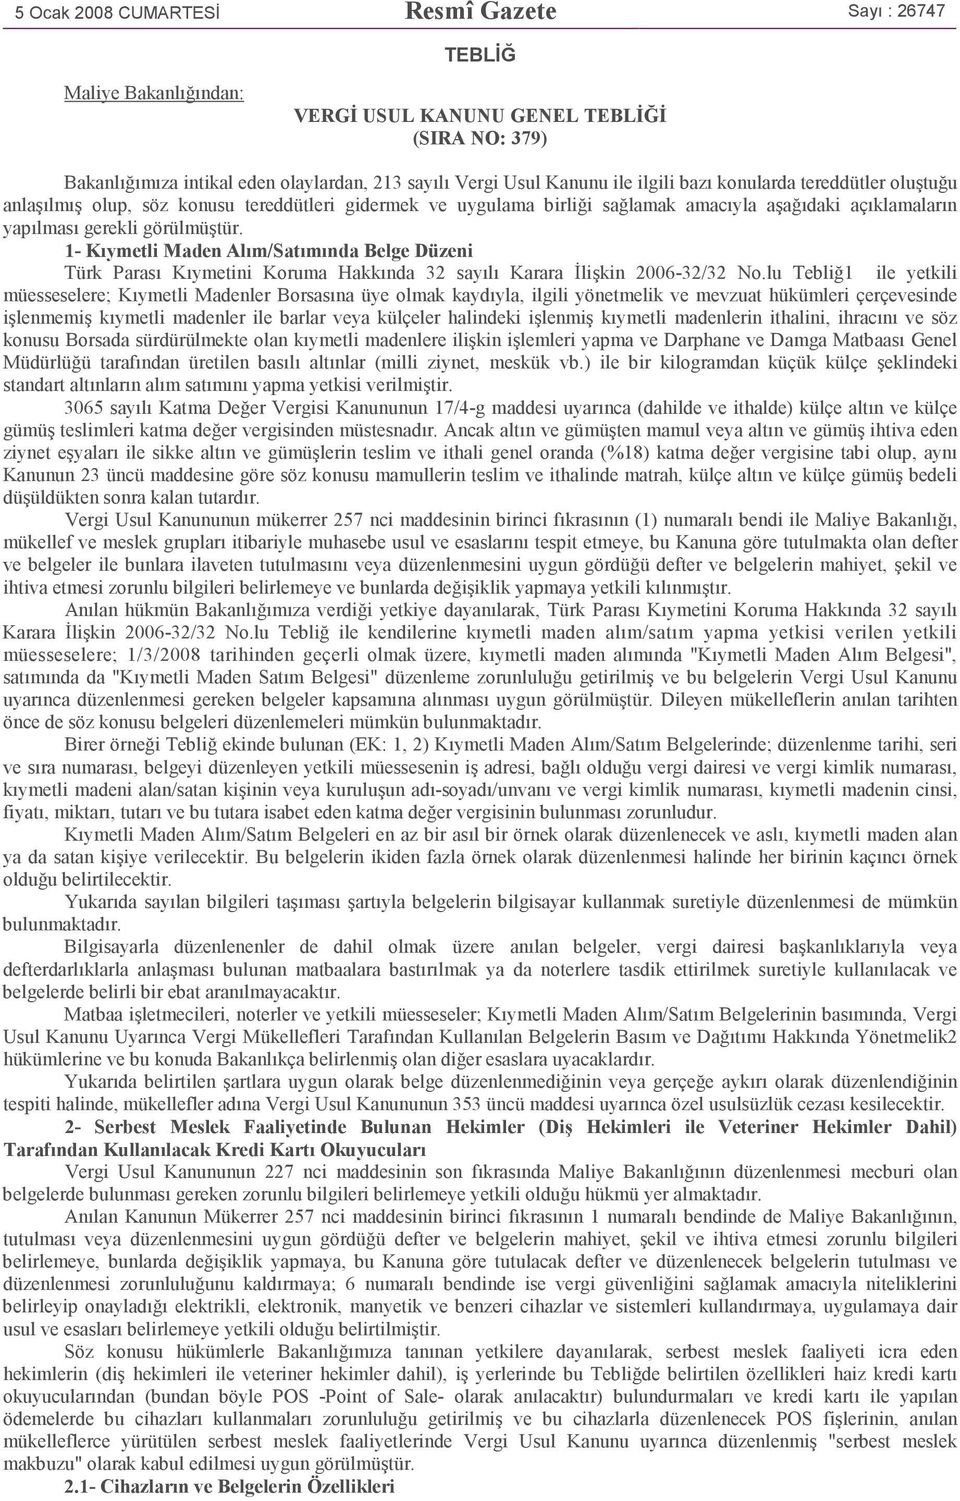 1- Kıymetli Maden Alım/Satımında Belge Düzeni Türk Parası Kıymetini Koruma Hakkında 32 sayılı Karara Đlişkin 2006-32/32 No.